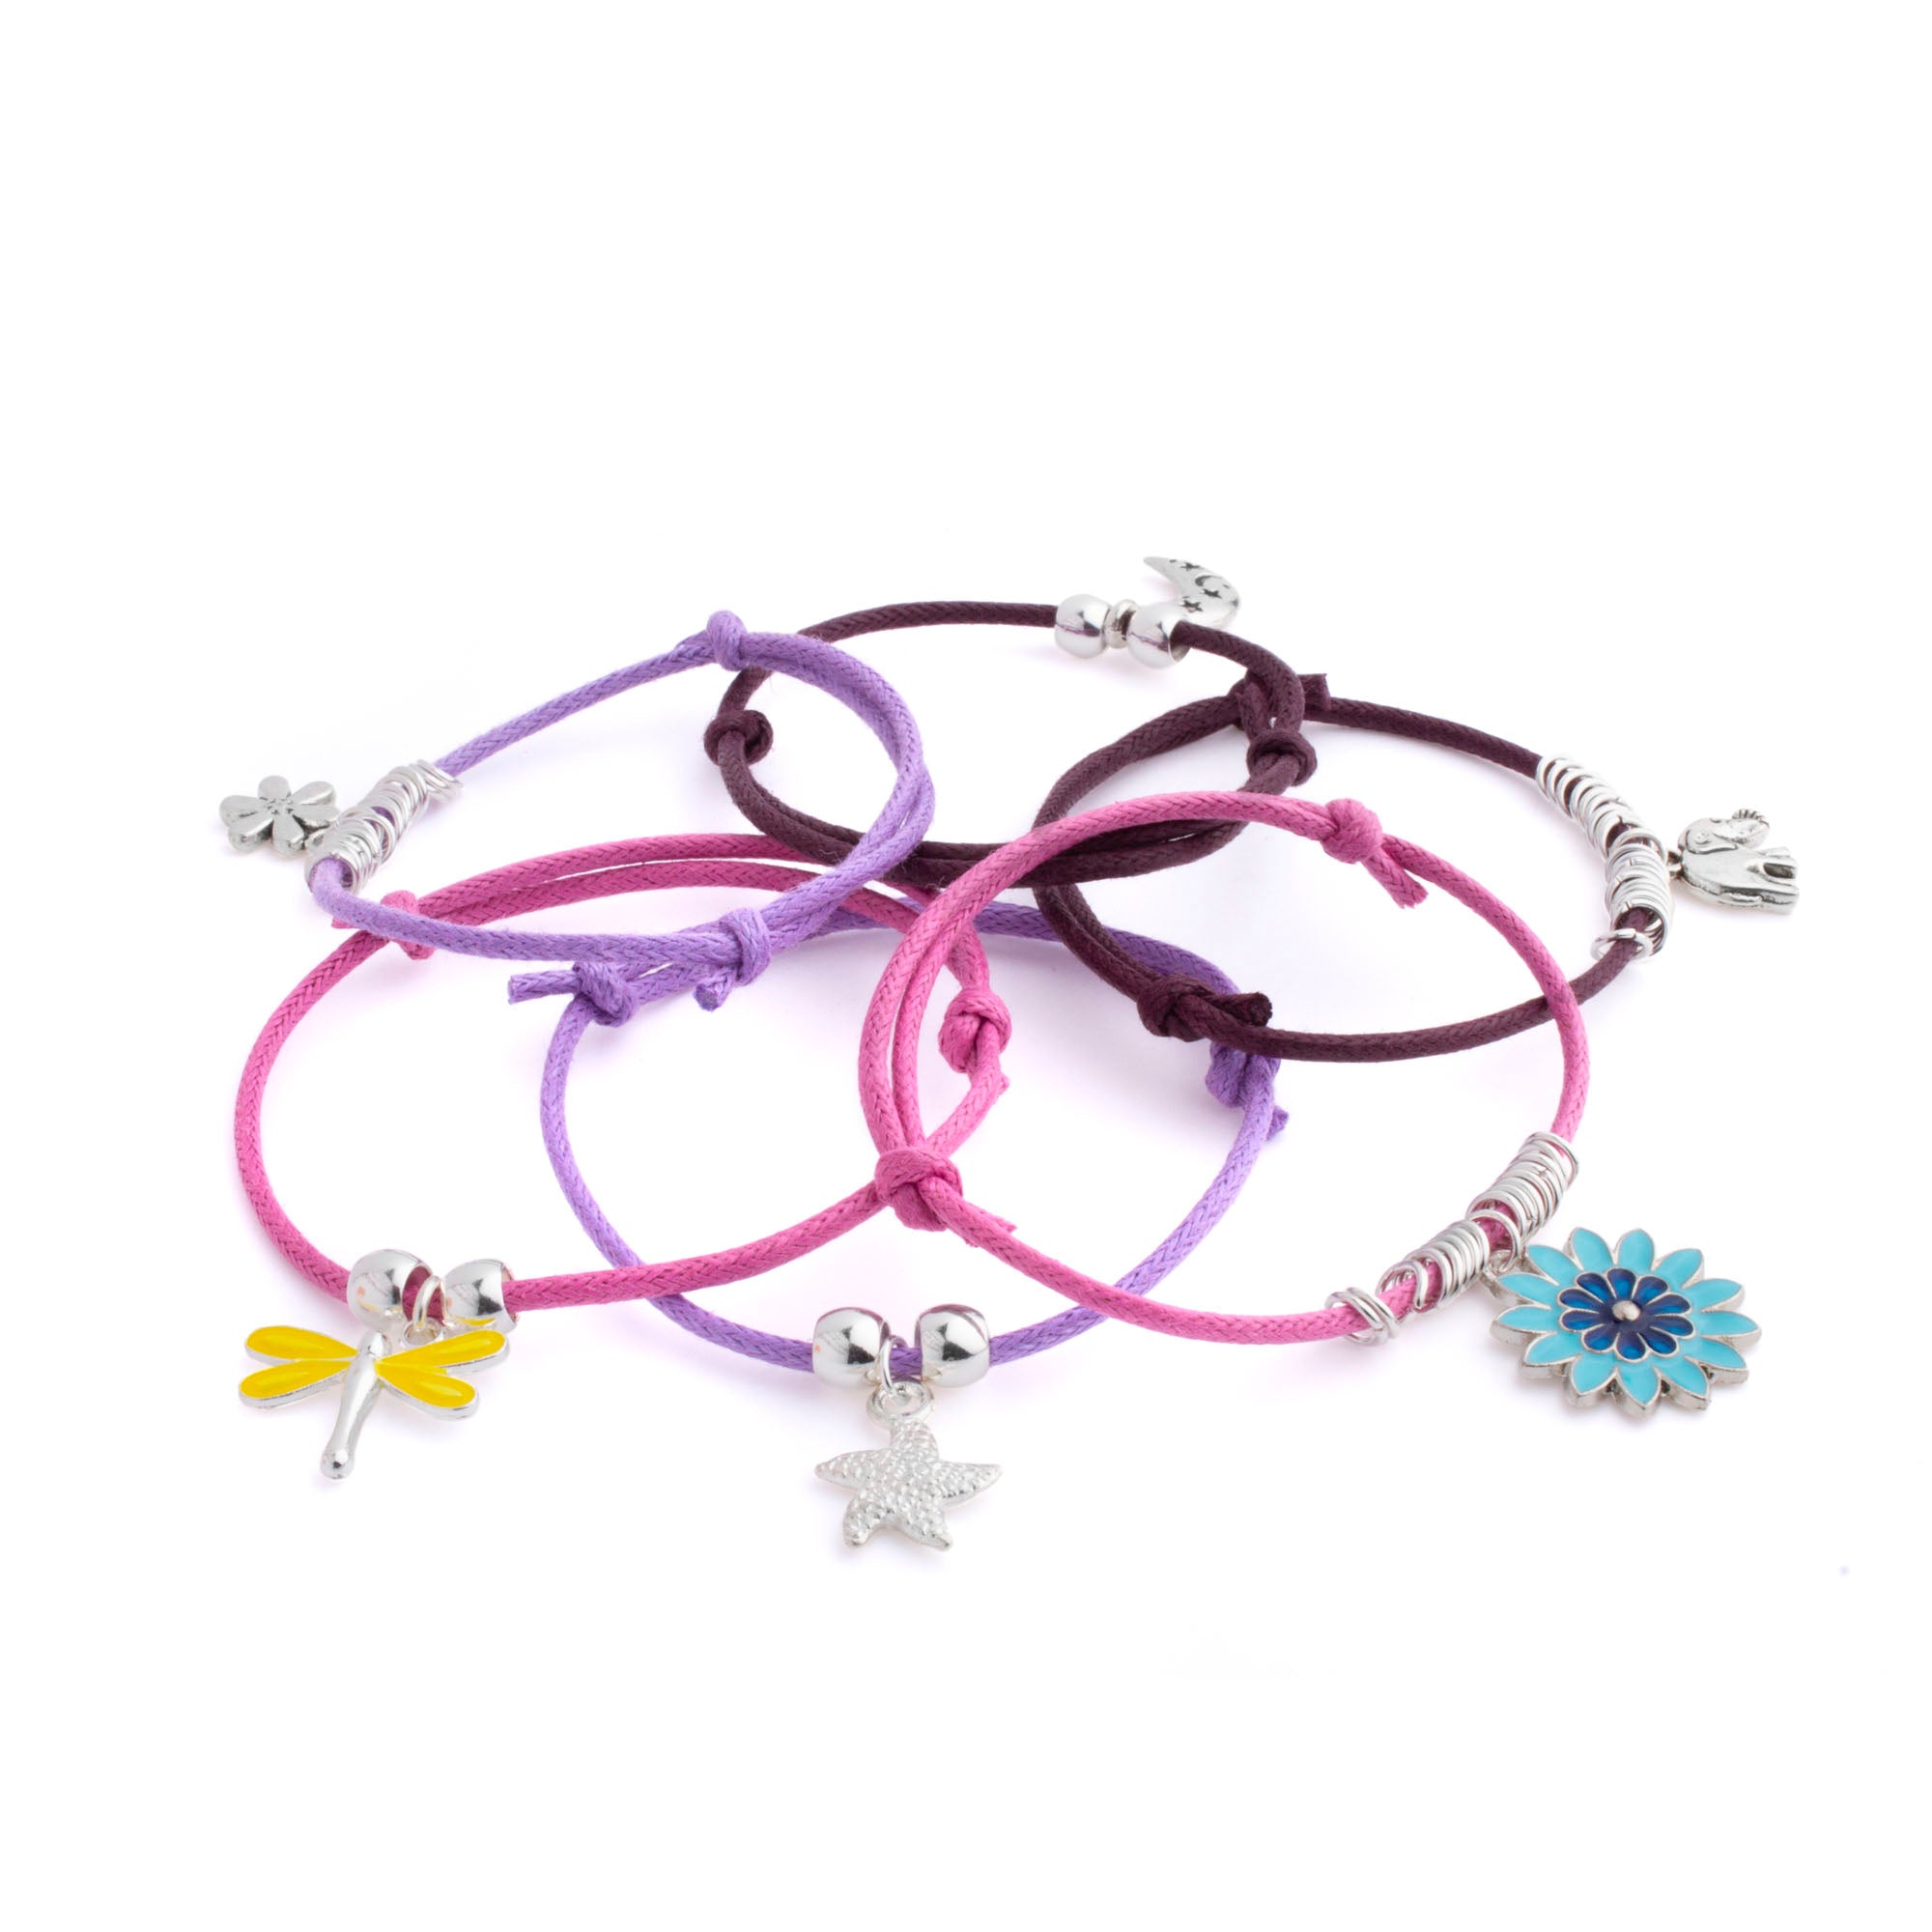 Pastel Party Stack Bracelet Kit - Makes up to 10 Bracelets